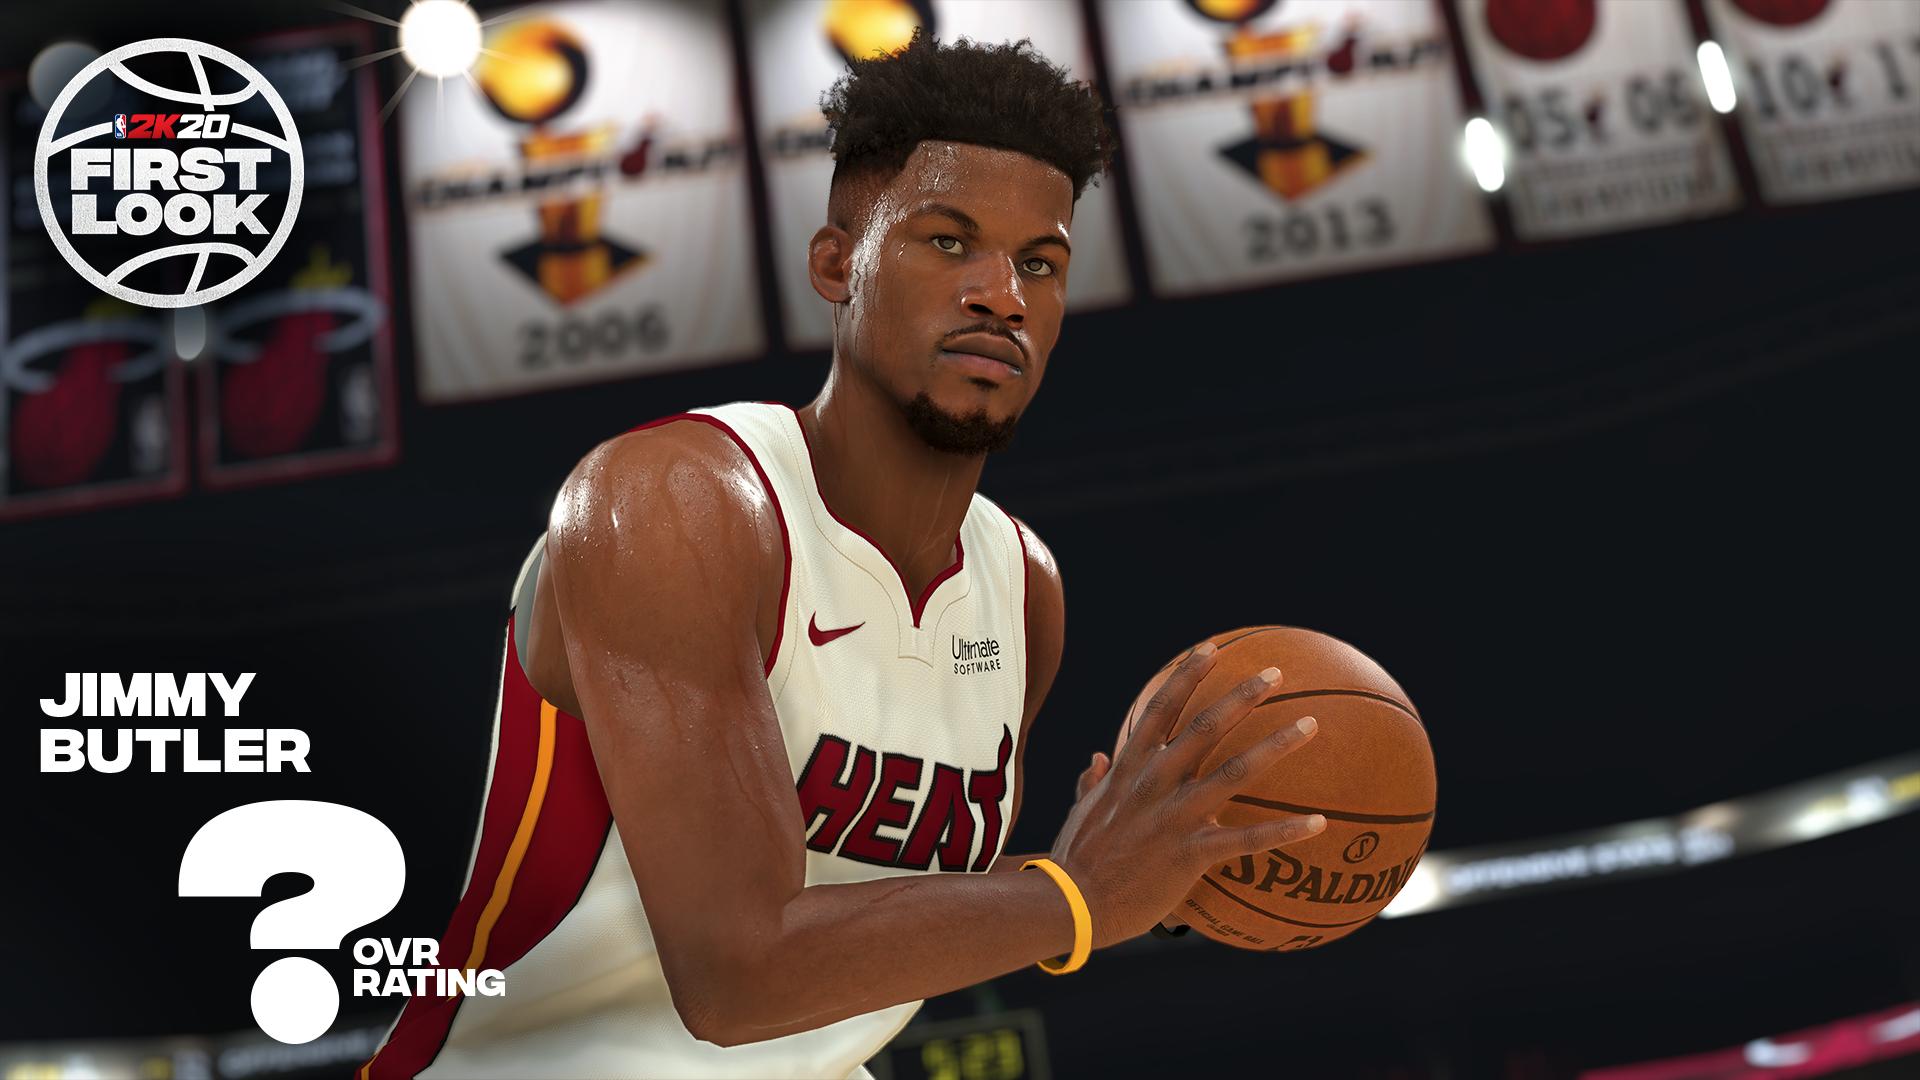 《NBA 2K20》公布首批截图 展示多位球员游戏内建模